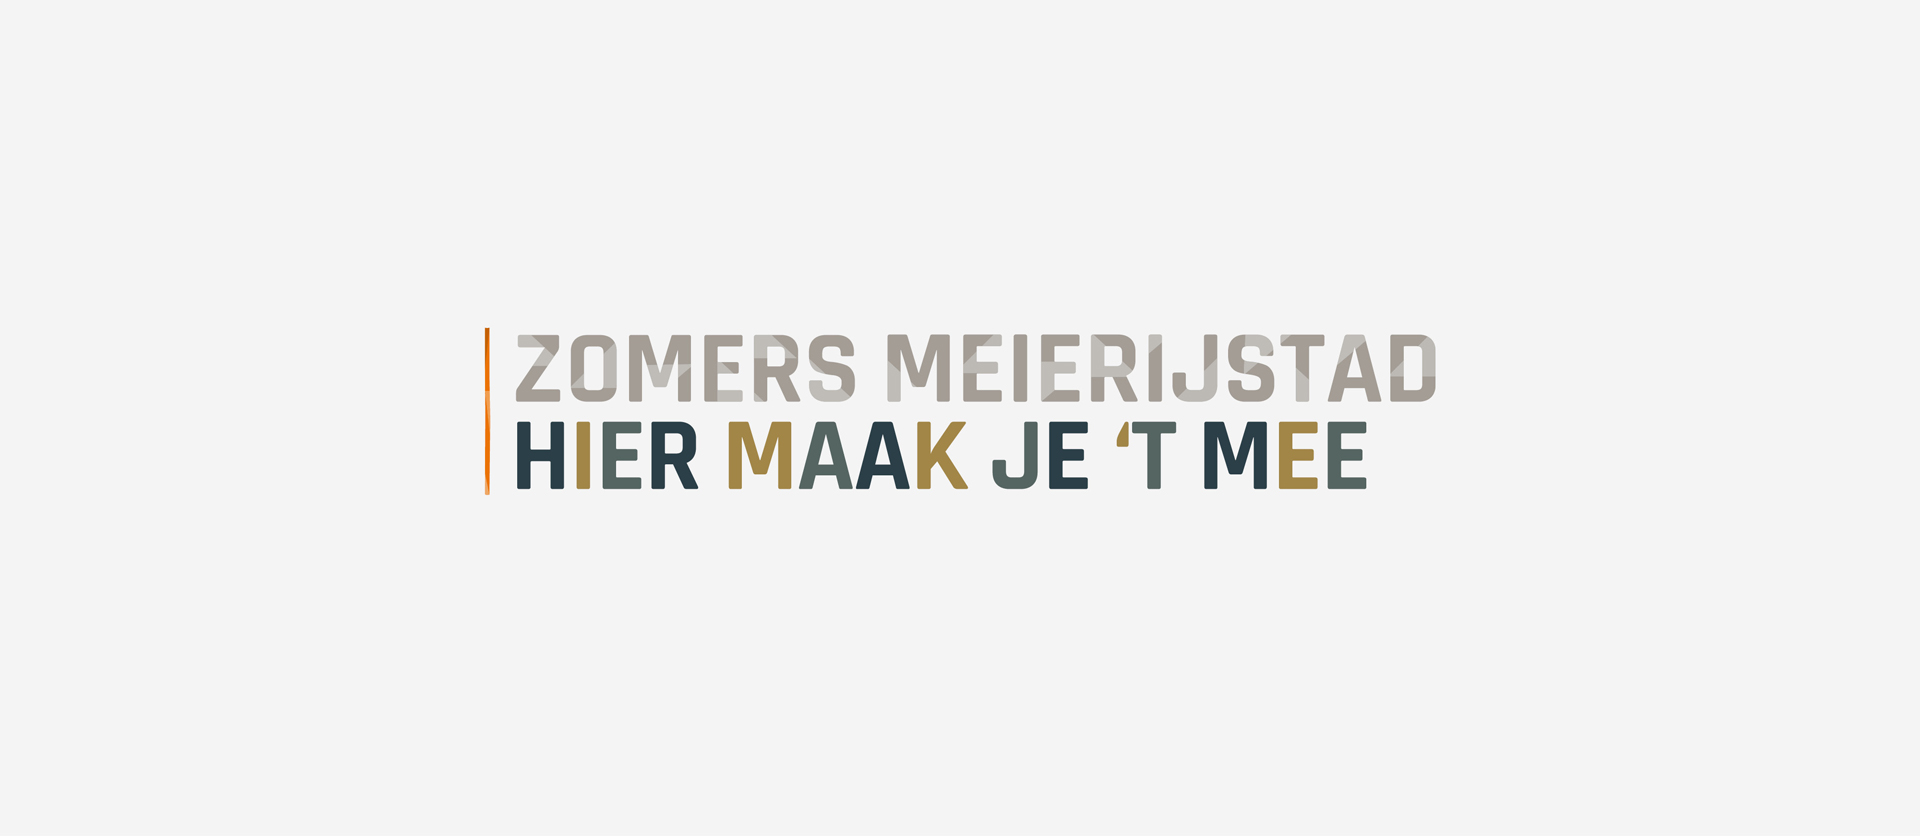 Het campagne logo van Zomers Meierijstad